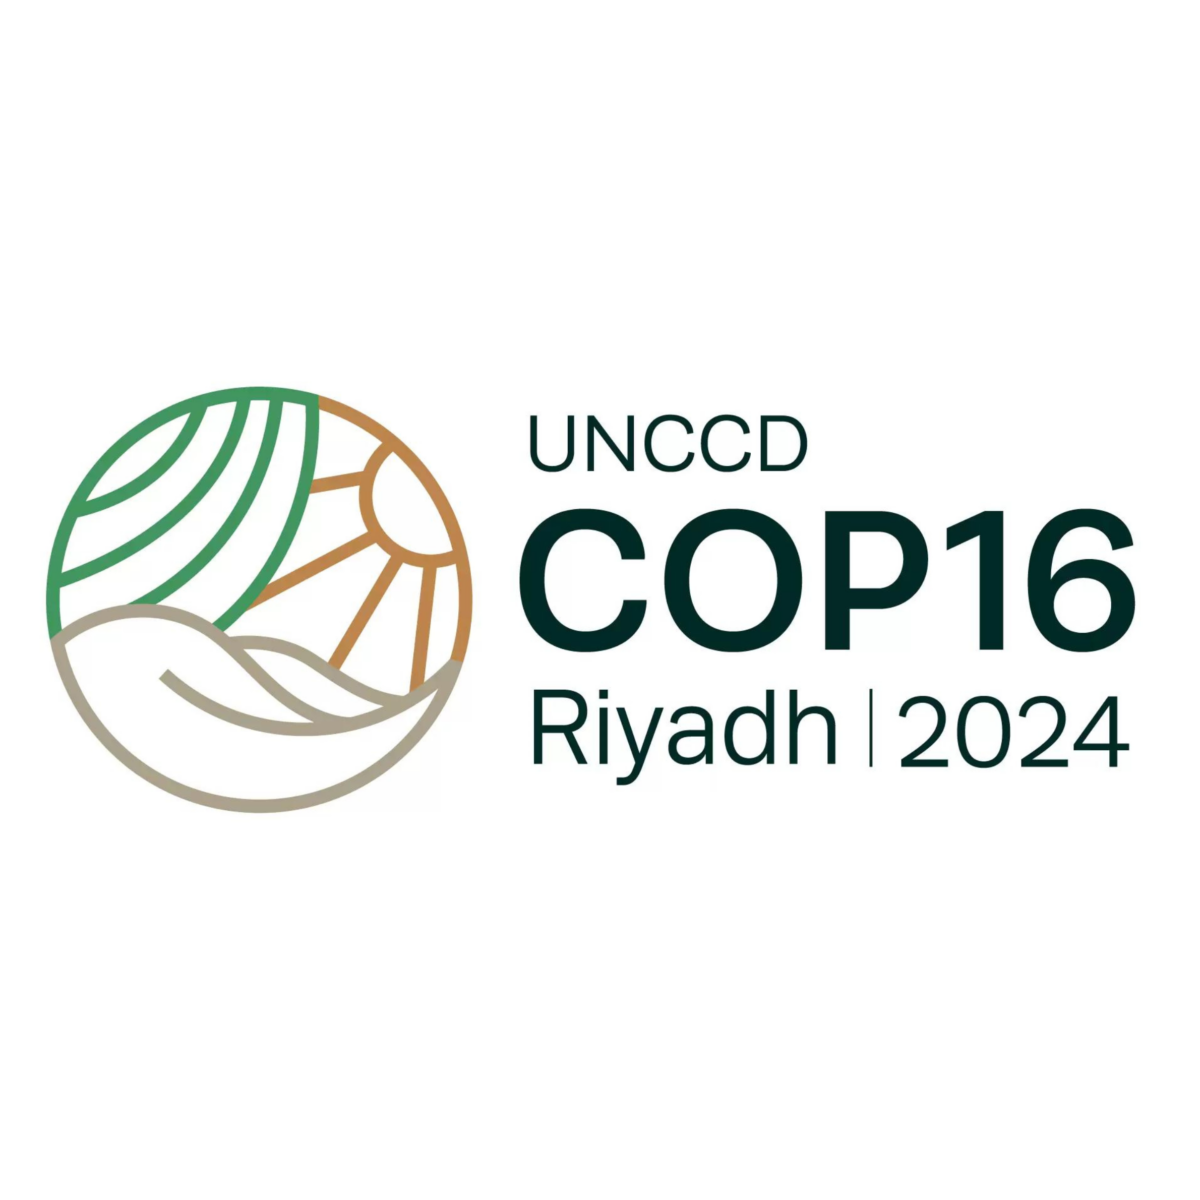 UNCCD COP16 Riyadh